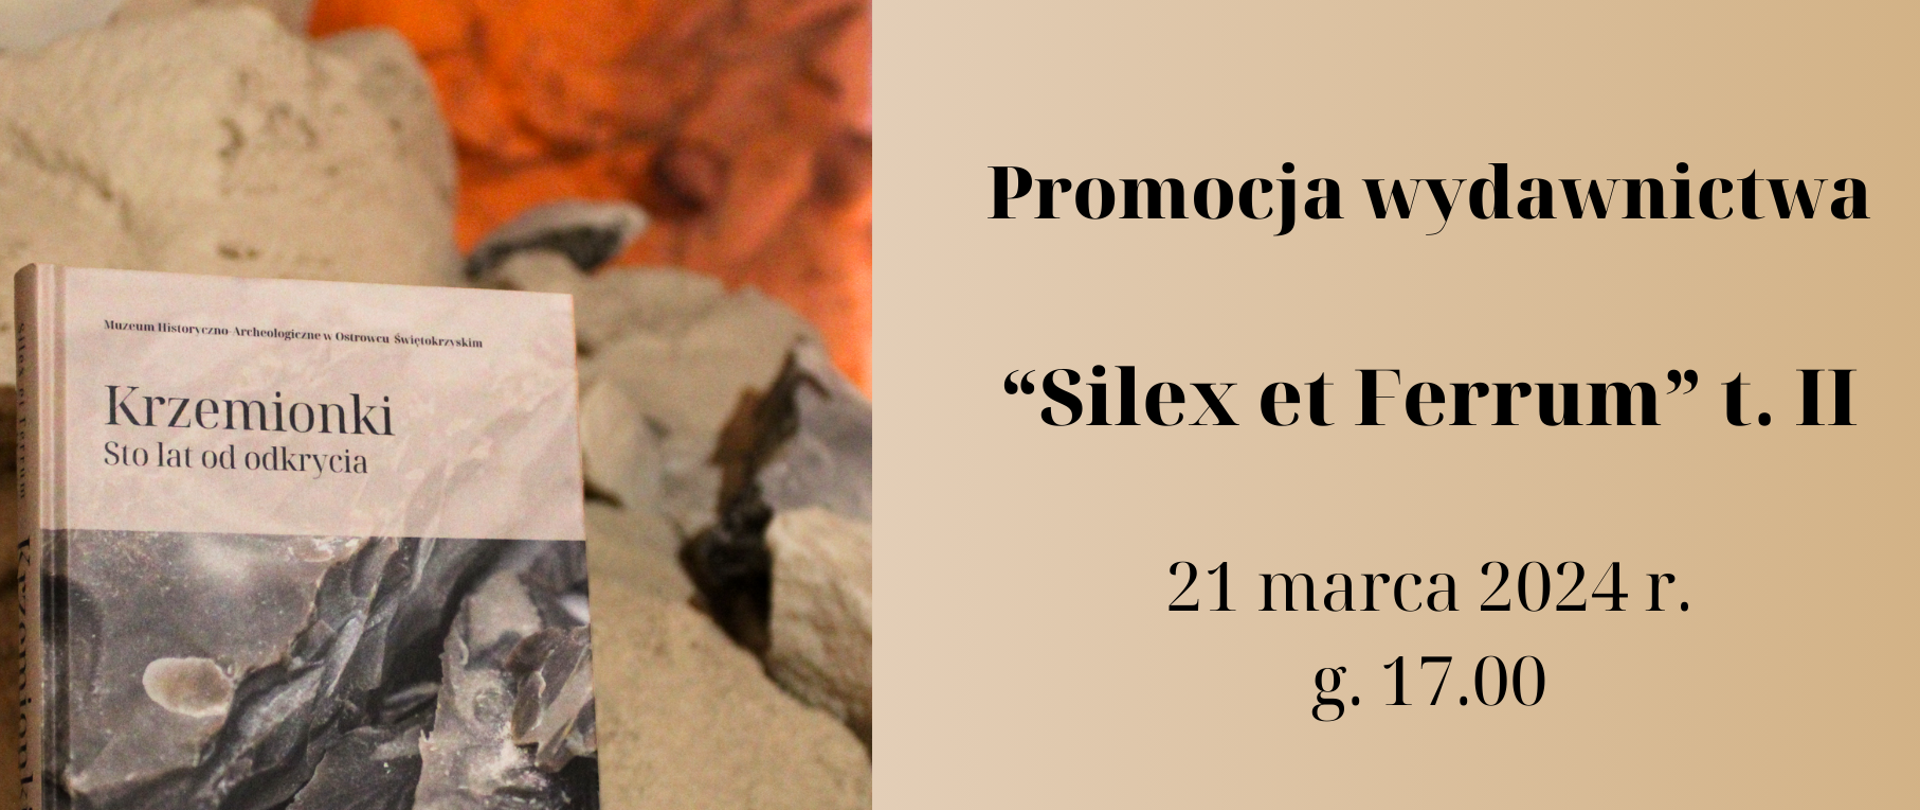 Promocja wydawnictwa „Silex et Ferrum” w ostrowieckim muzeum